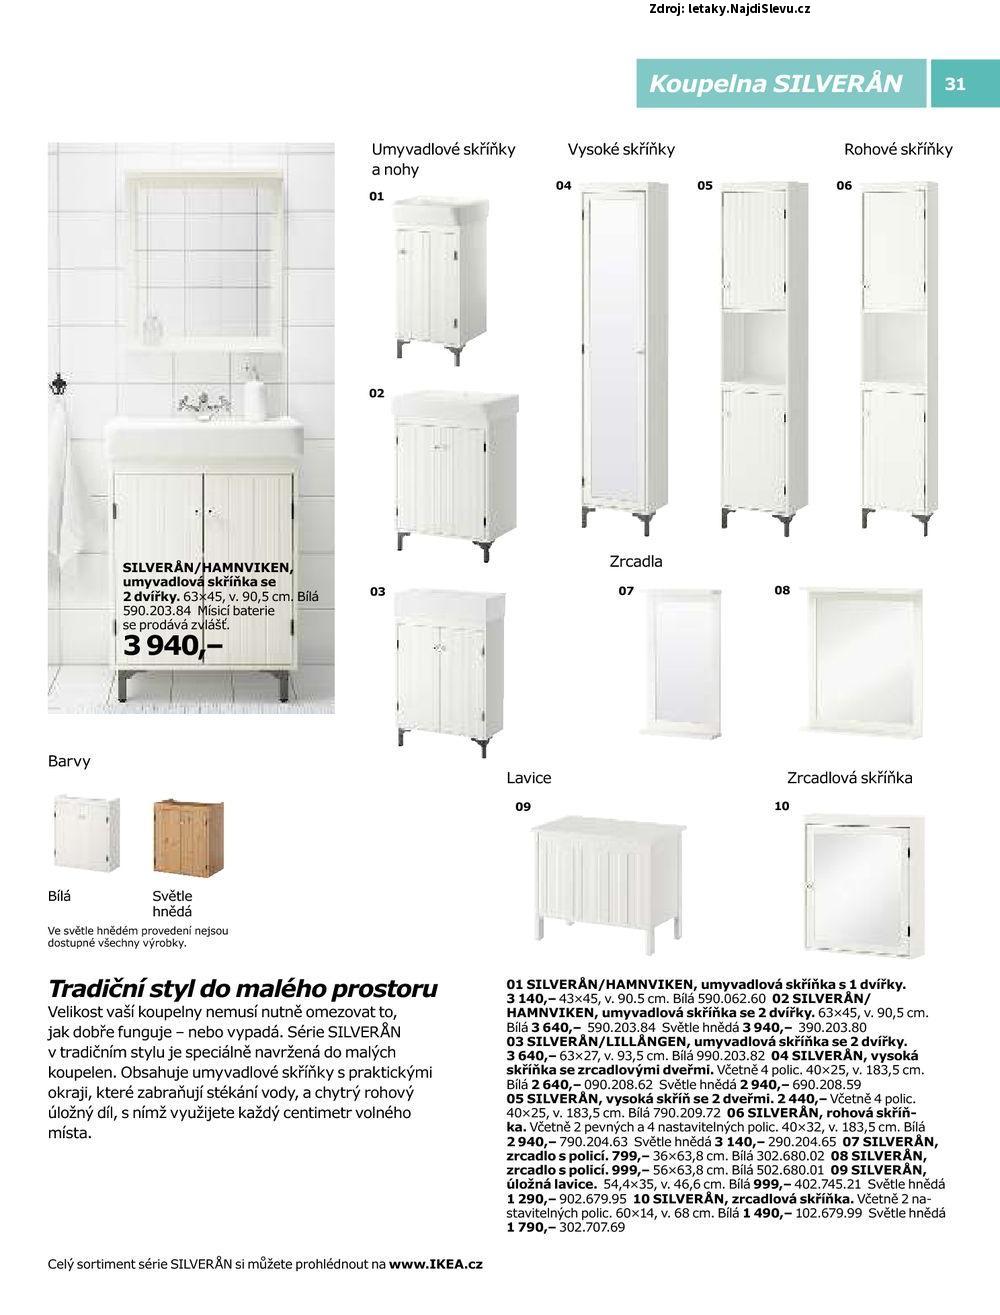 Strana 31 - letk IKEA (do 31. 7. 2016)